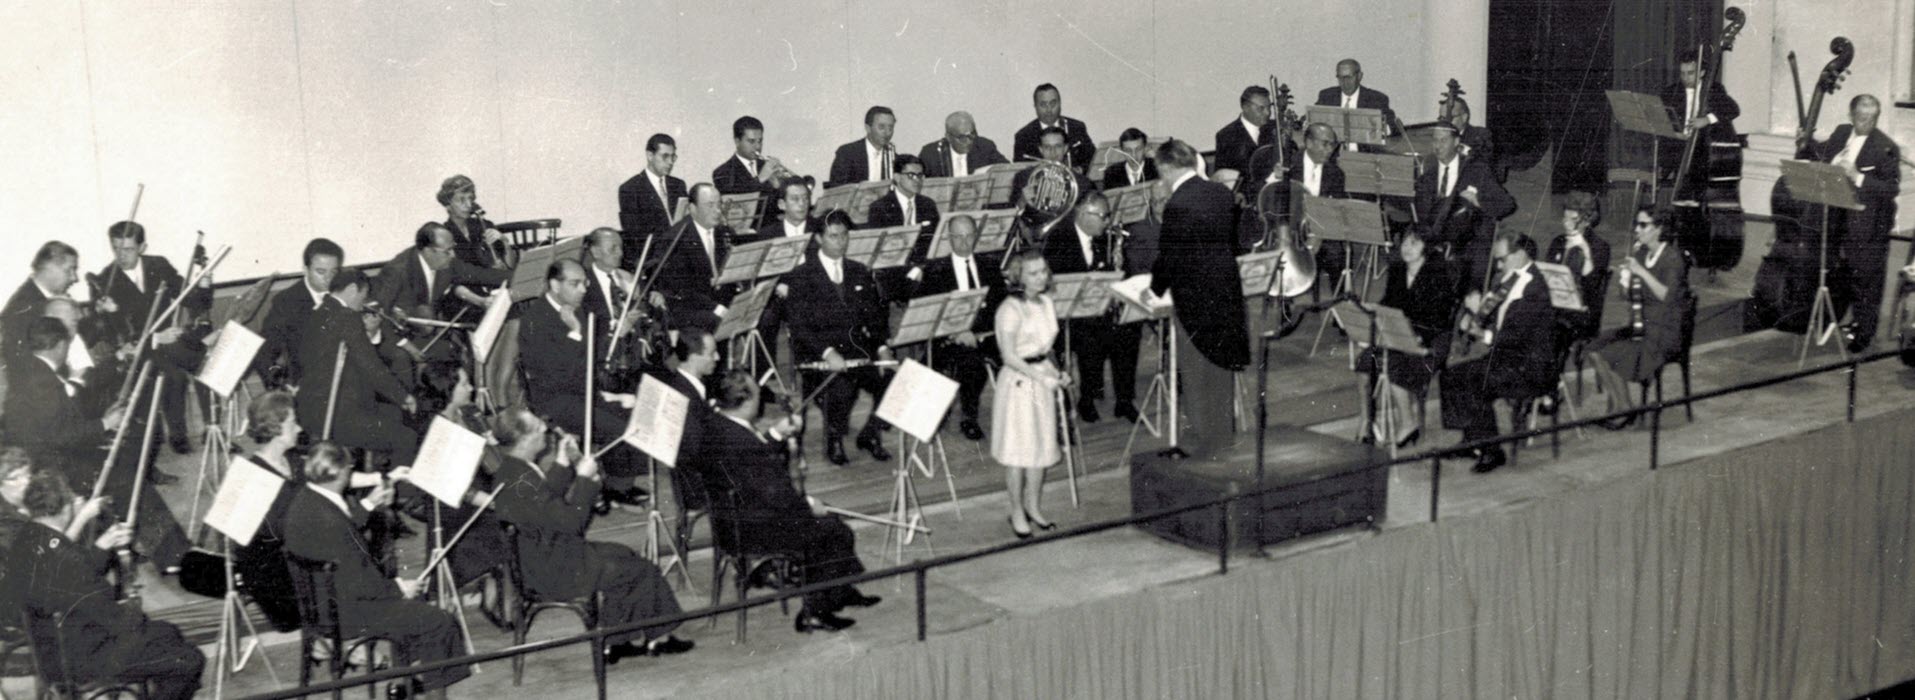 L'orchestra al Teatro Margherita per il Premio Paganini 1962 